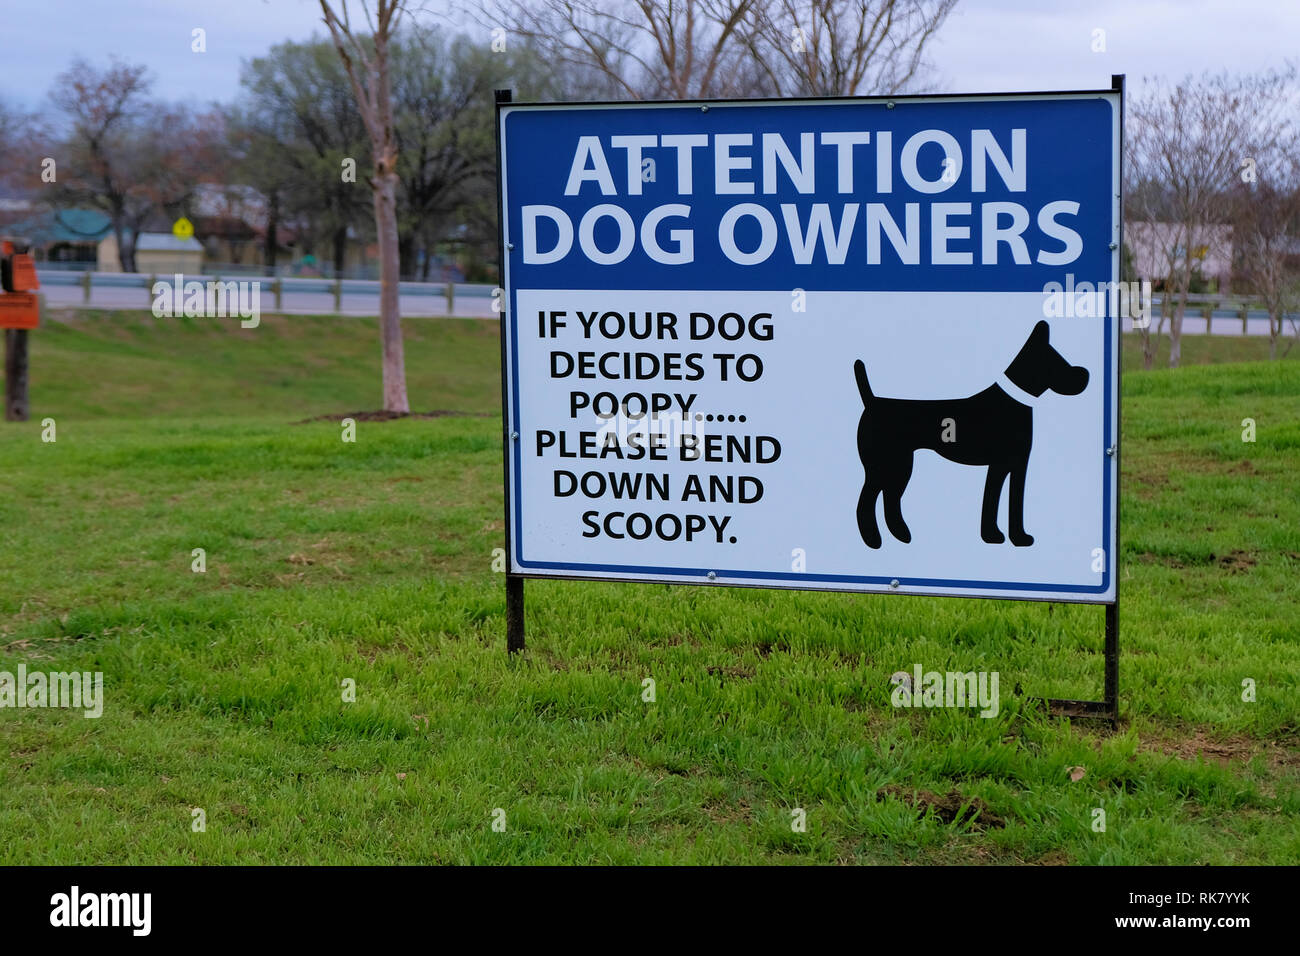 Zeichen anfordern Hundebesitzer reinigen Sie nach Ihrem Haustier: 'Achtung Hundebesitzer. Wenn Ihr Hund entscheidet, Poopy bitte nach unten biegen und scoopy." Stockfoto